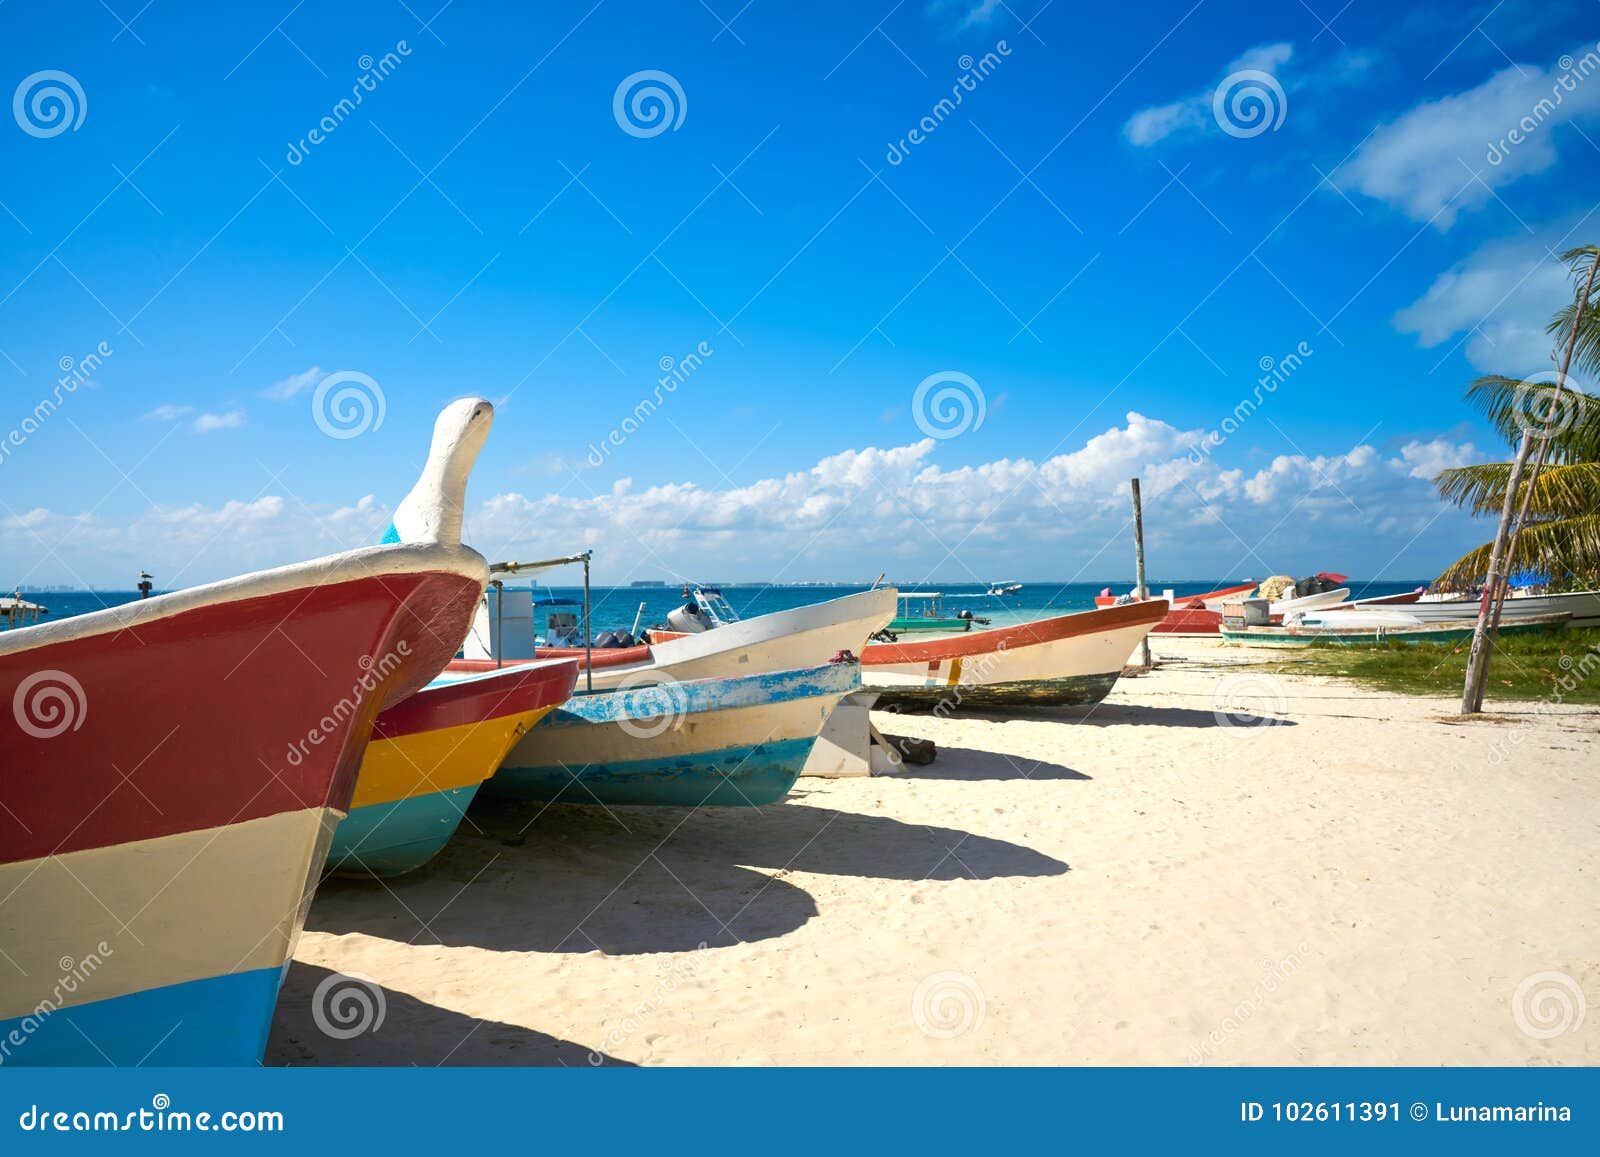 isla mujeres island caribbean beach mexico